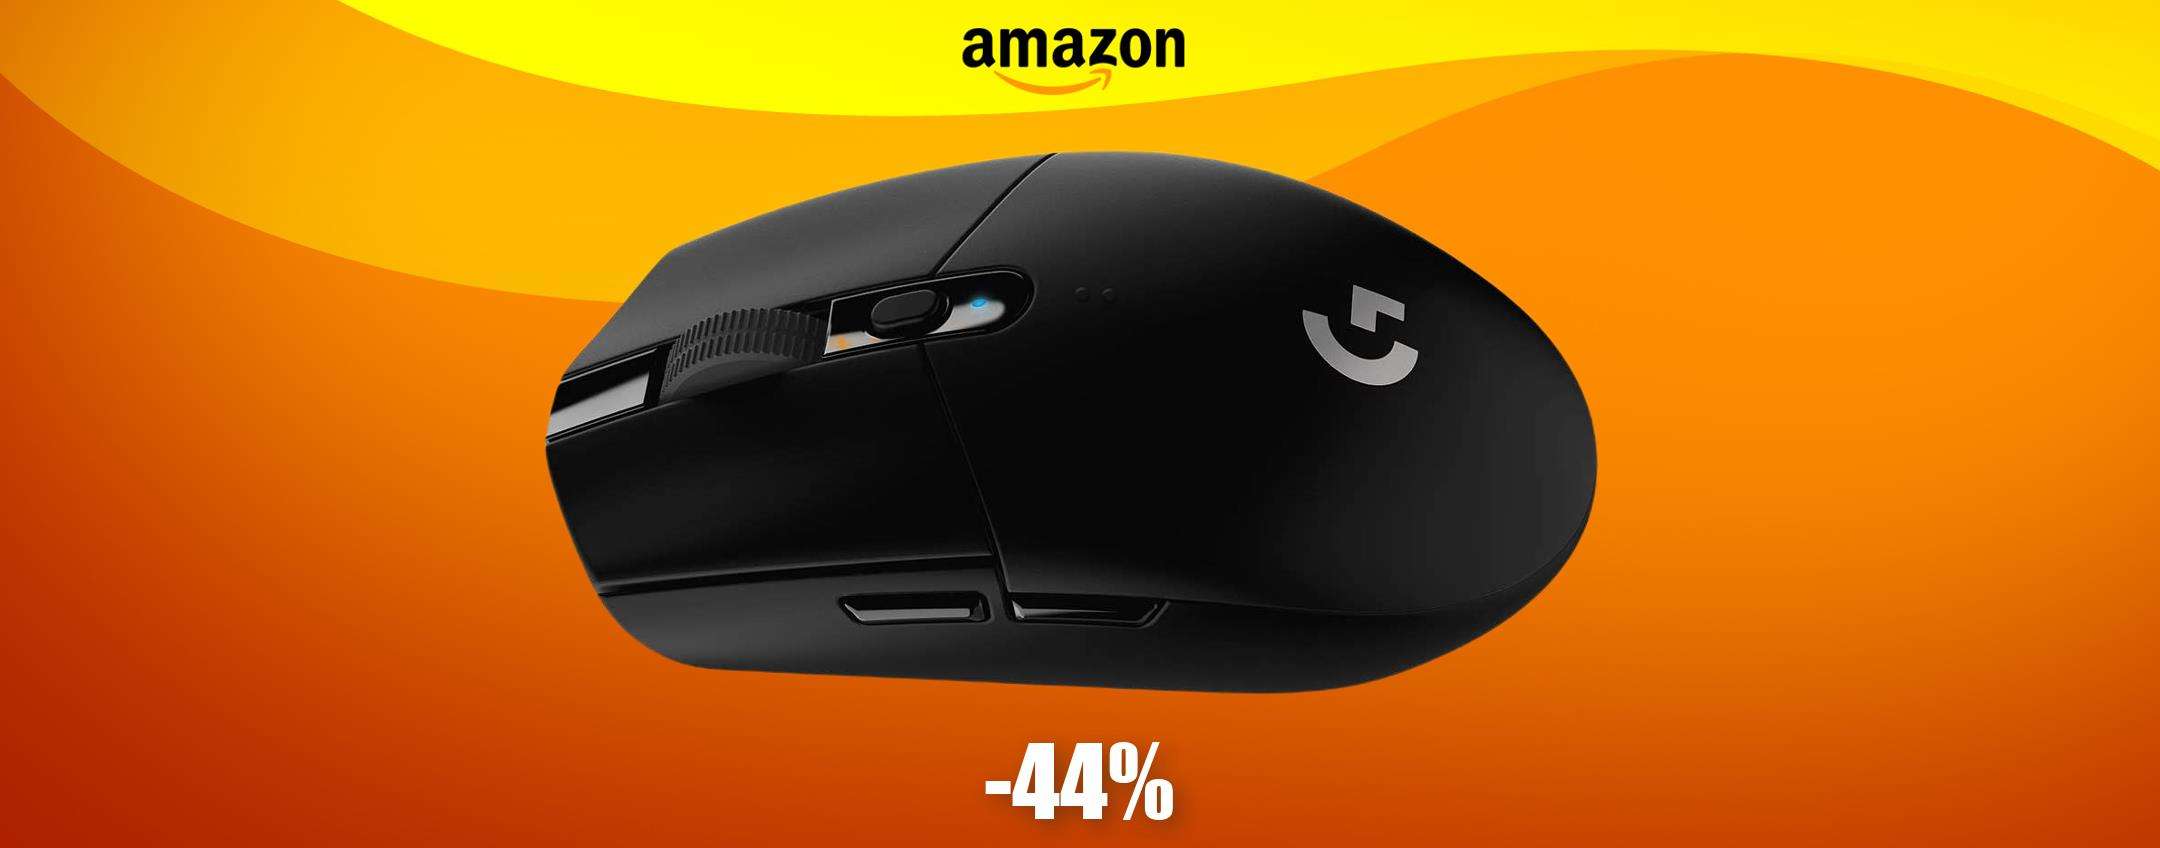 Mouse GAMING velocissimo e con durata infinita: ben 250 ore (-27€)